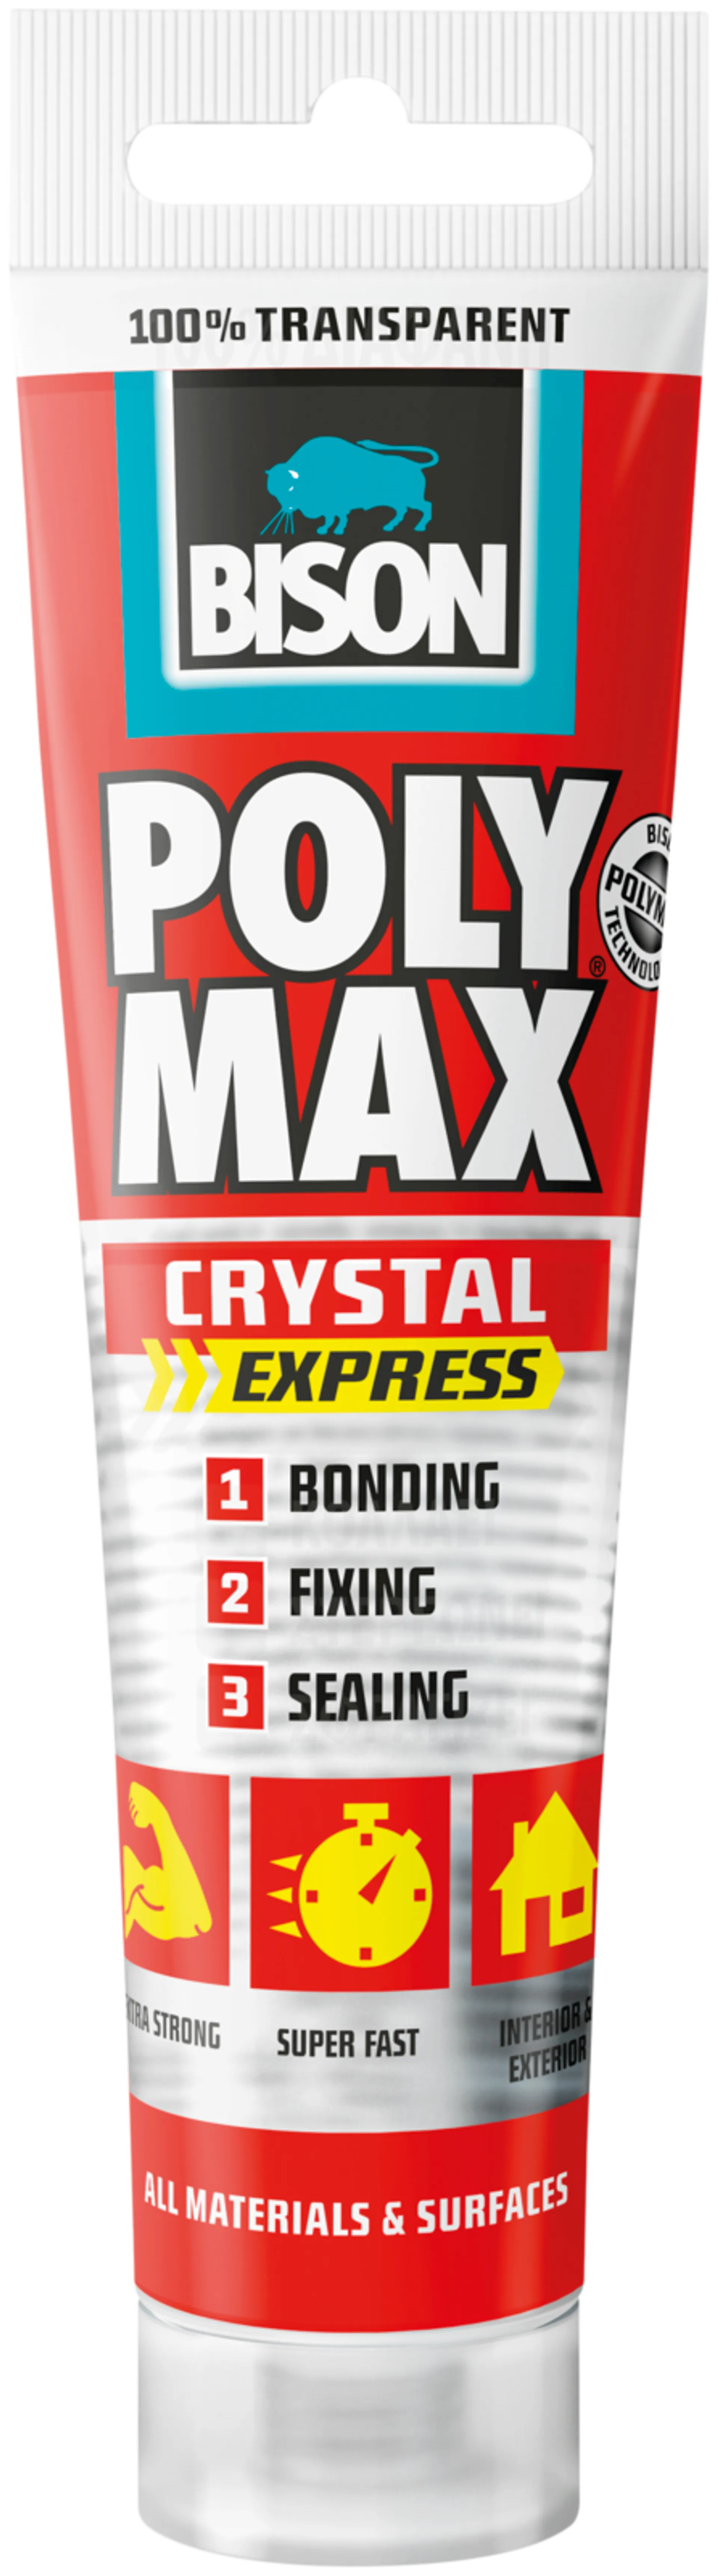 Bison rakennusliima Poly max crystal express 115g